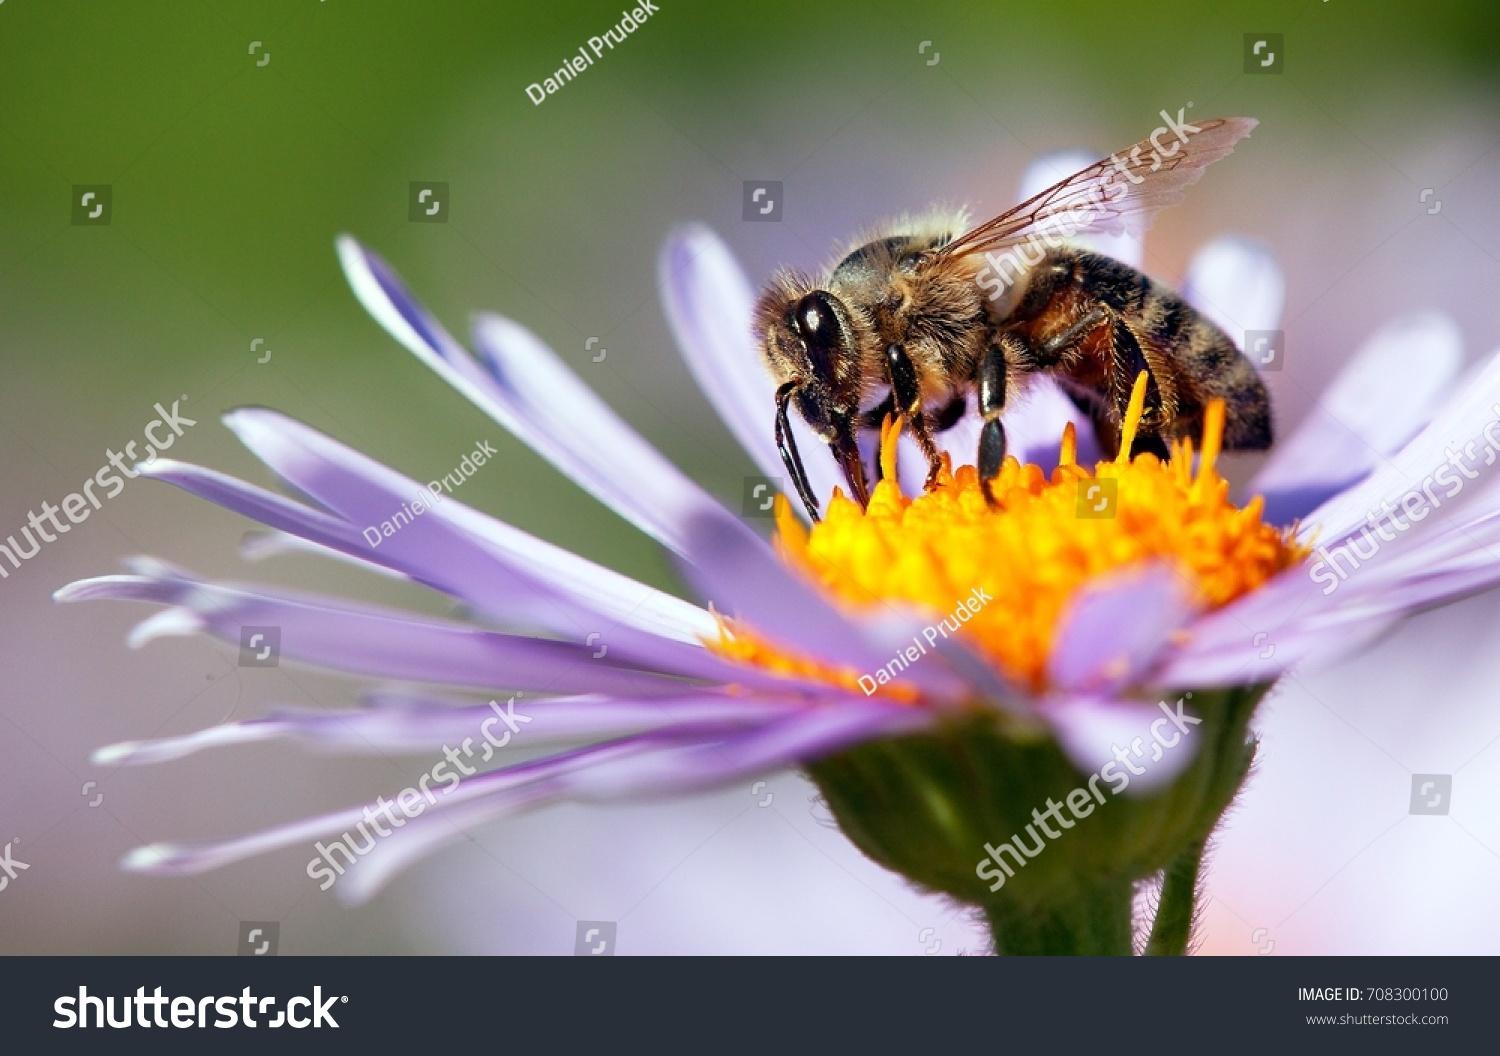 Bienen Mieten erhöht die Reputation von Unternehmen